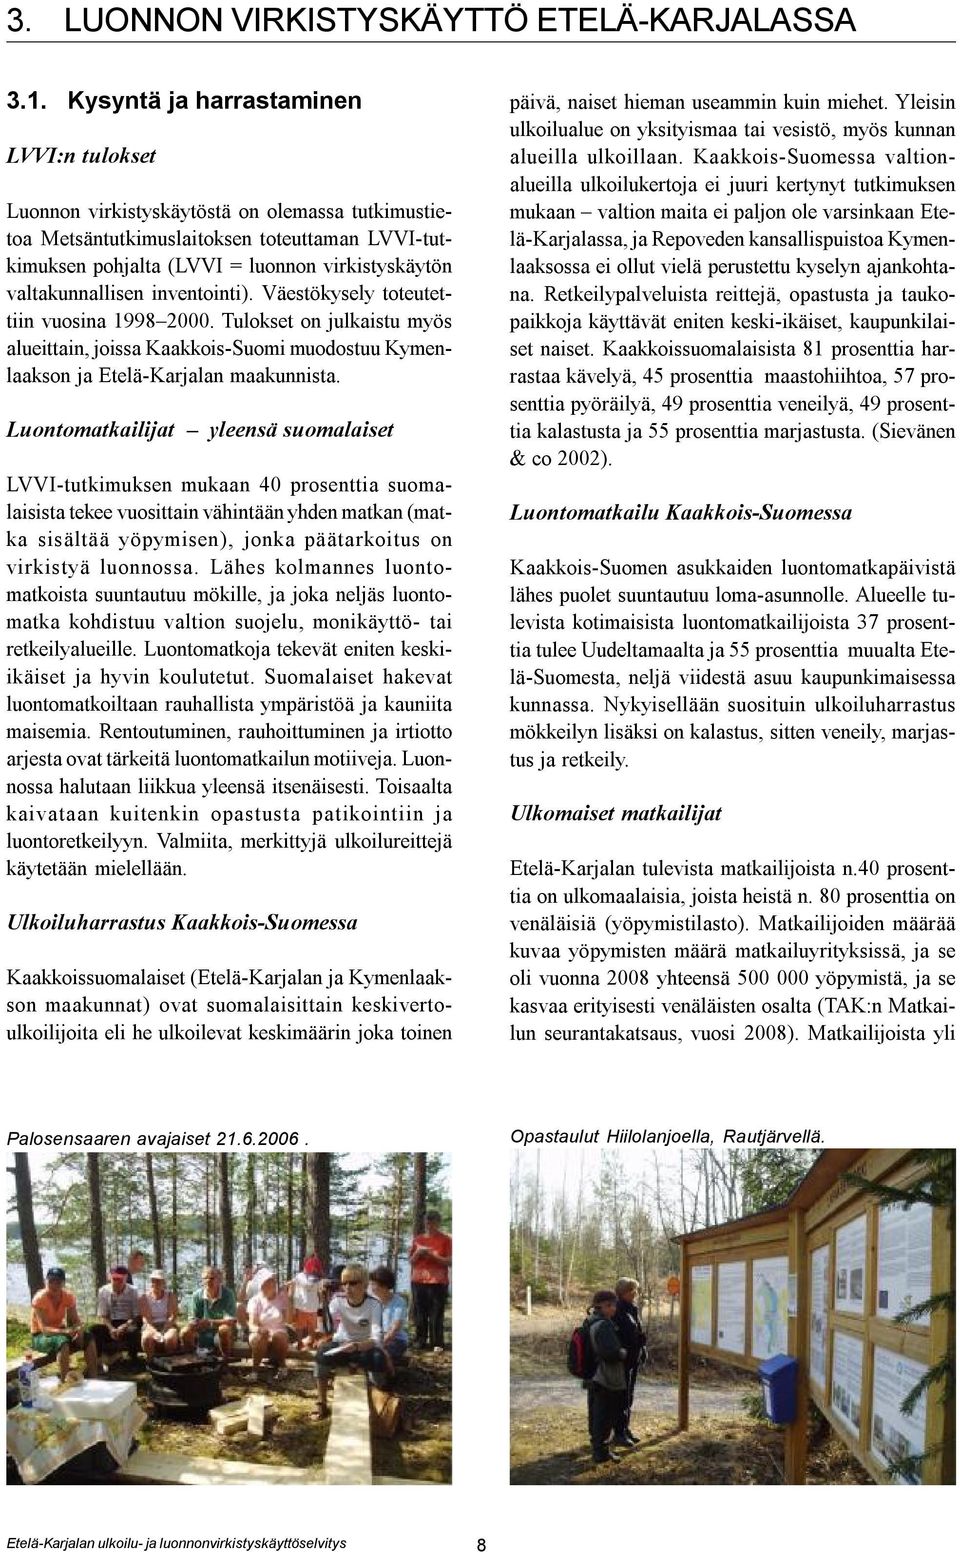 valtakunnallisen inventointi). Väestökysely toteutettiin vuosina 1998 2000. Tulokset on julkaistu myös alueittain, joissa Kaakkois-Suomi muodostuu Kymenlaakson ja Etelä-Karjalan maakunnista.